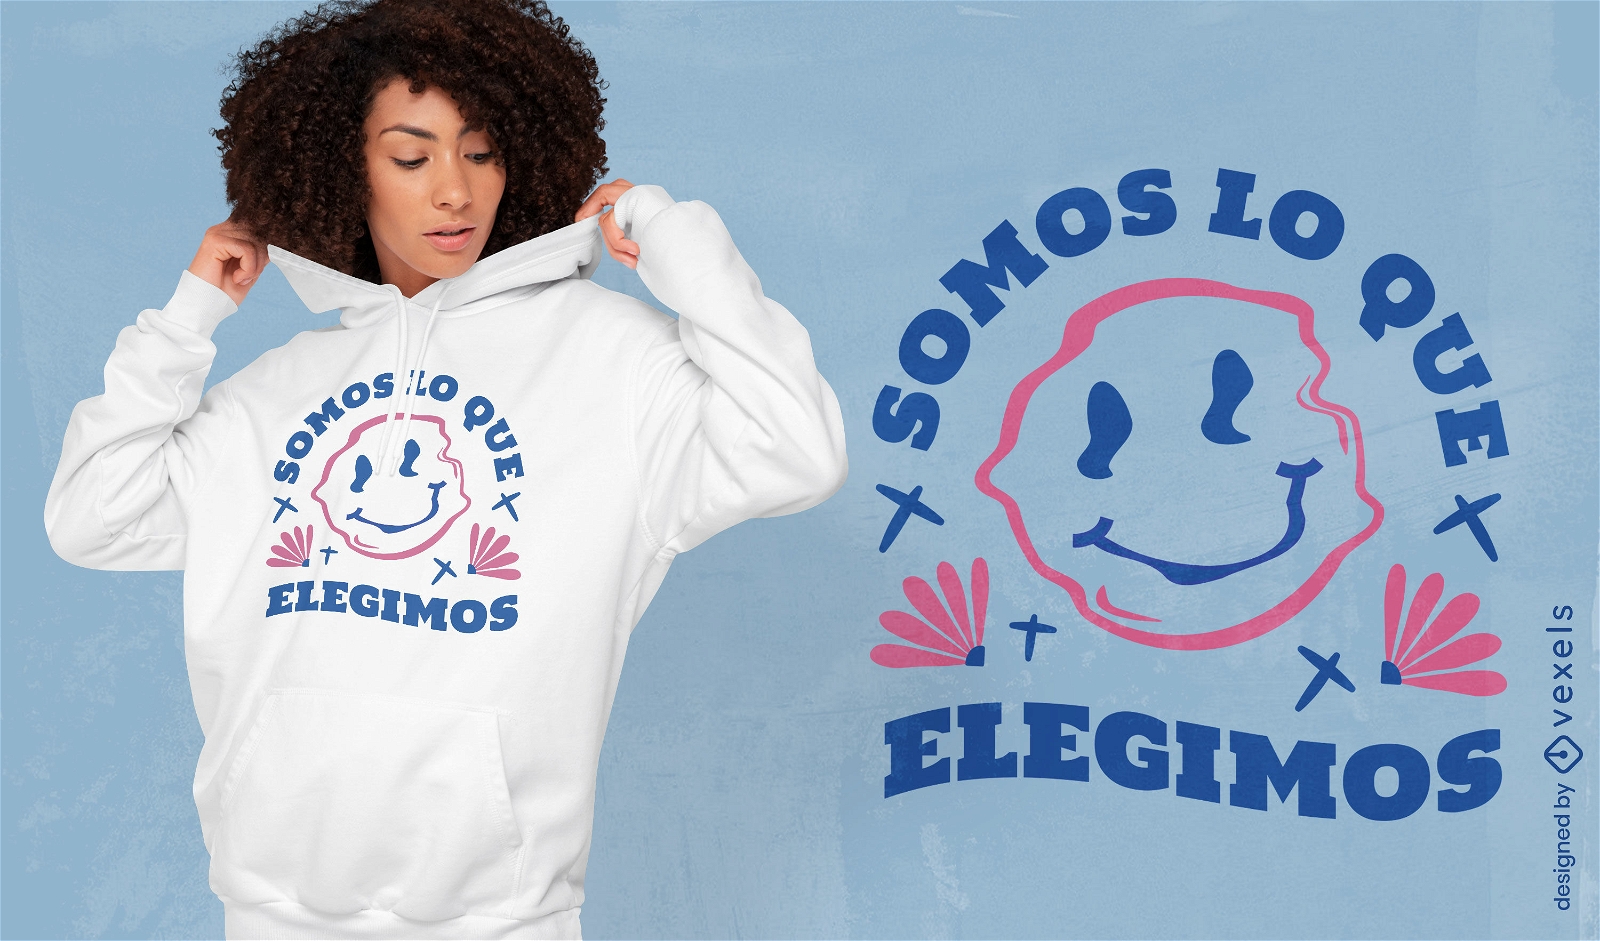 Diseño de camiseta con cita motivacional sonriente distorsionada en español